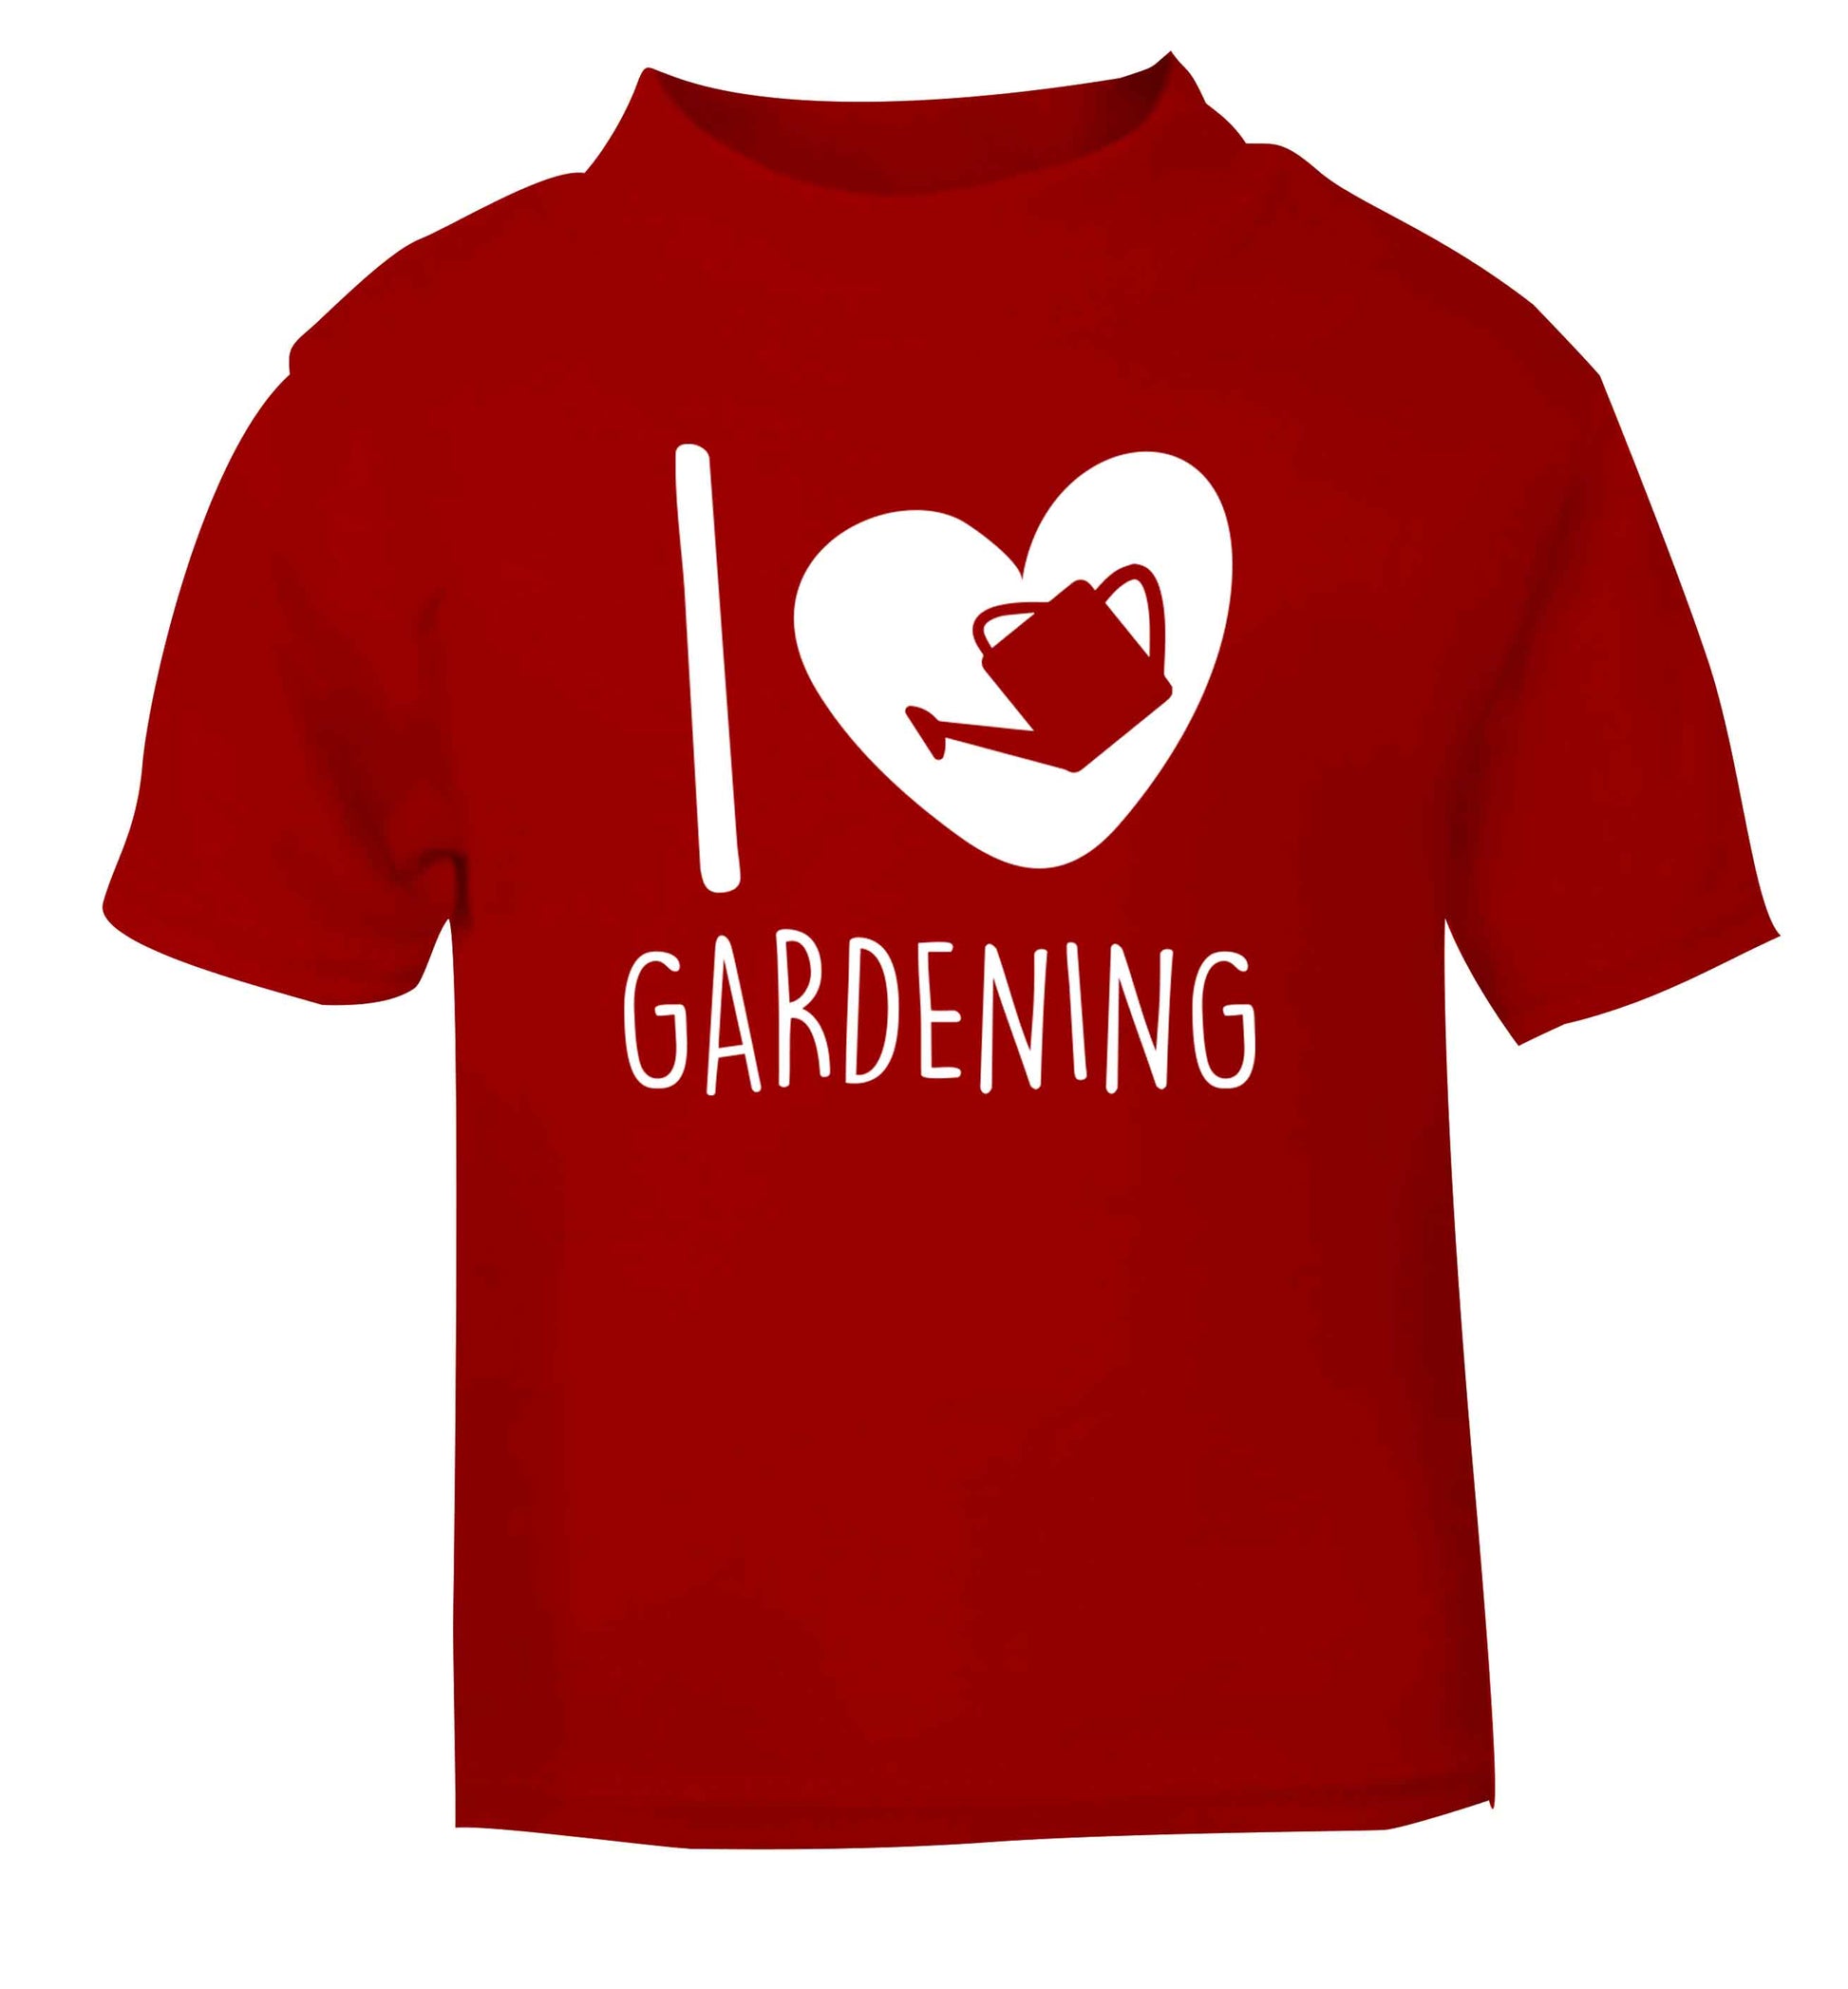 I love gardening red Baby Toddler Tshirt 2 Years